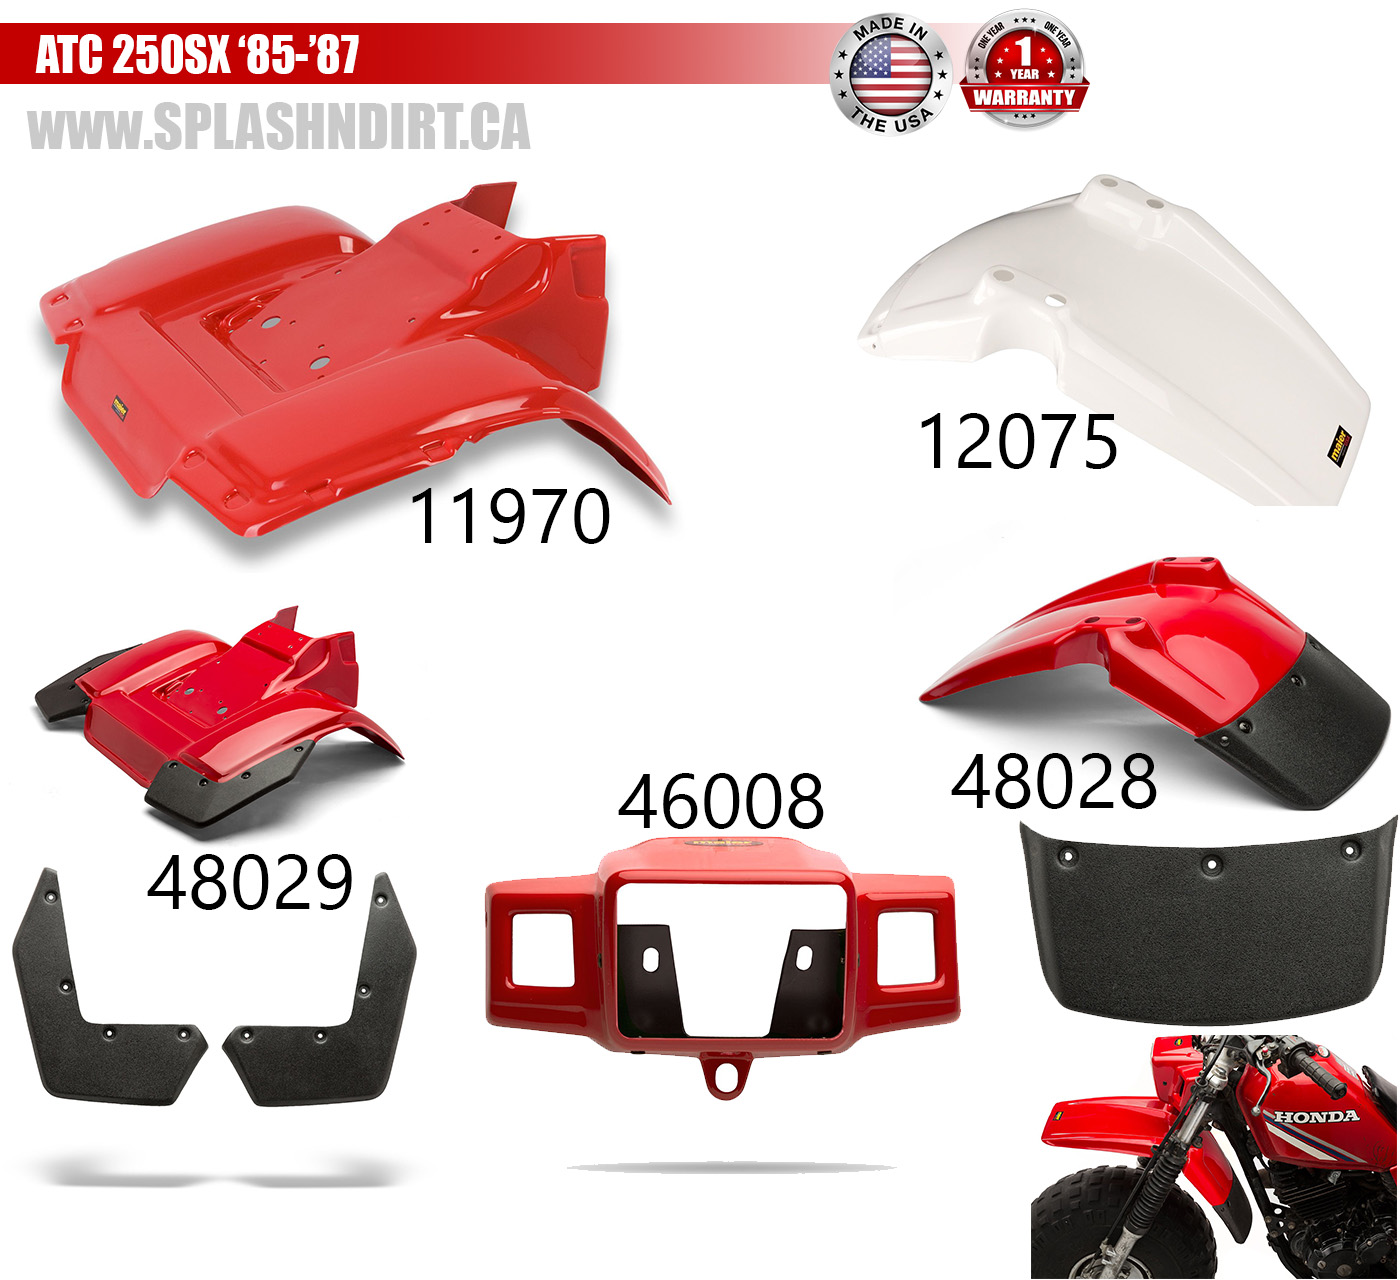 Honda atc250sx plastics body maier